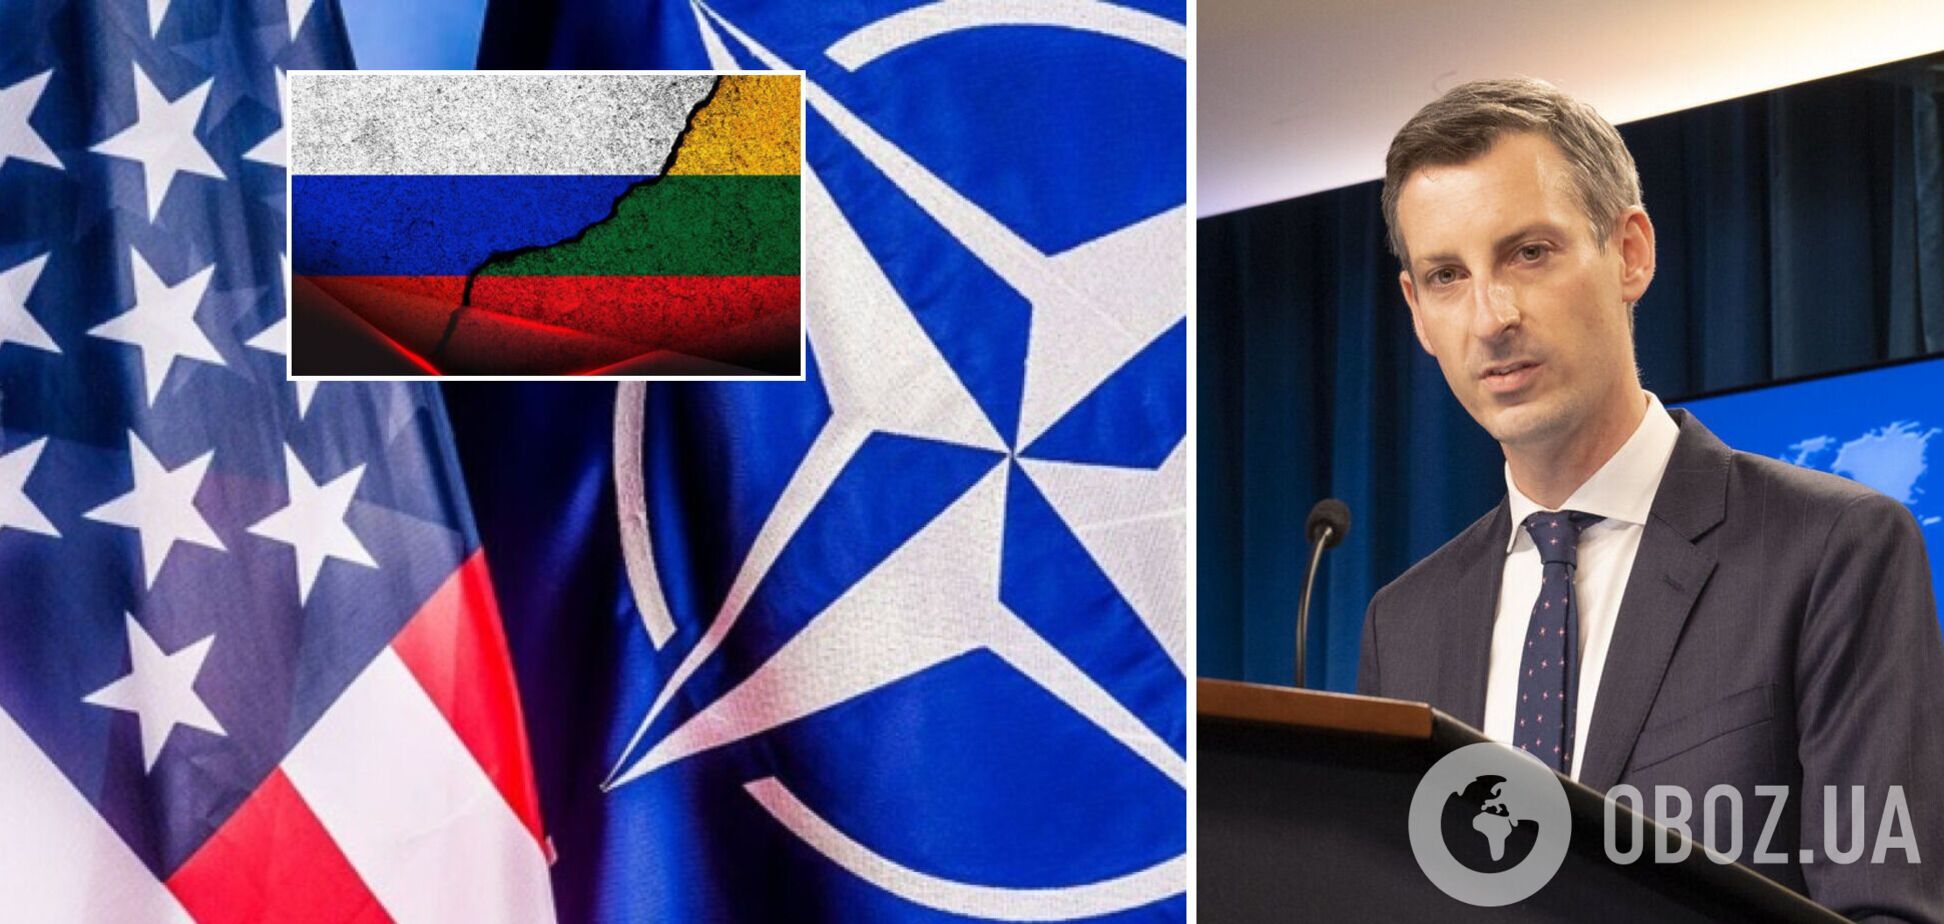 Напад на члена НАТО означає атаку на всіх: у США готові захистити Литву в разі агресії Росії